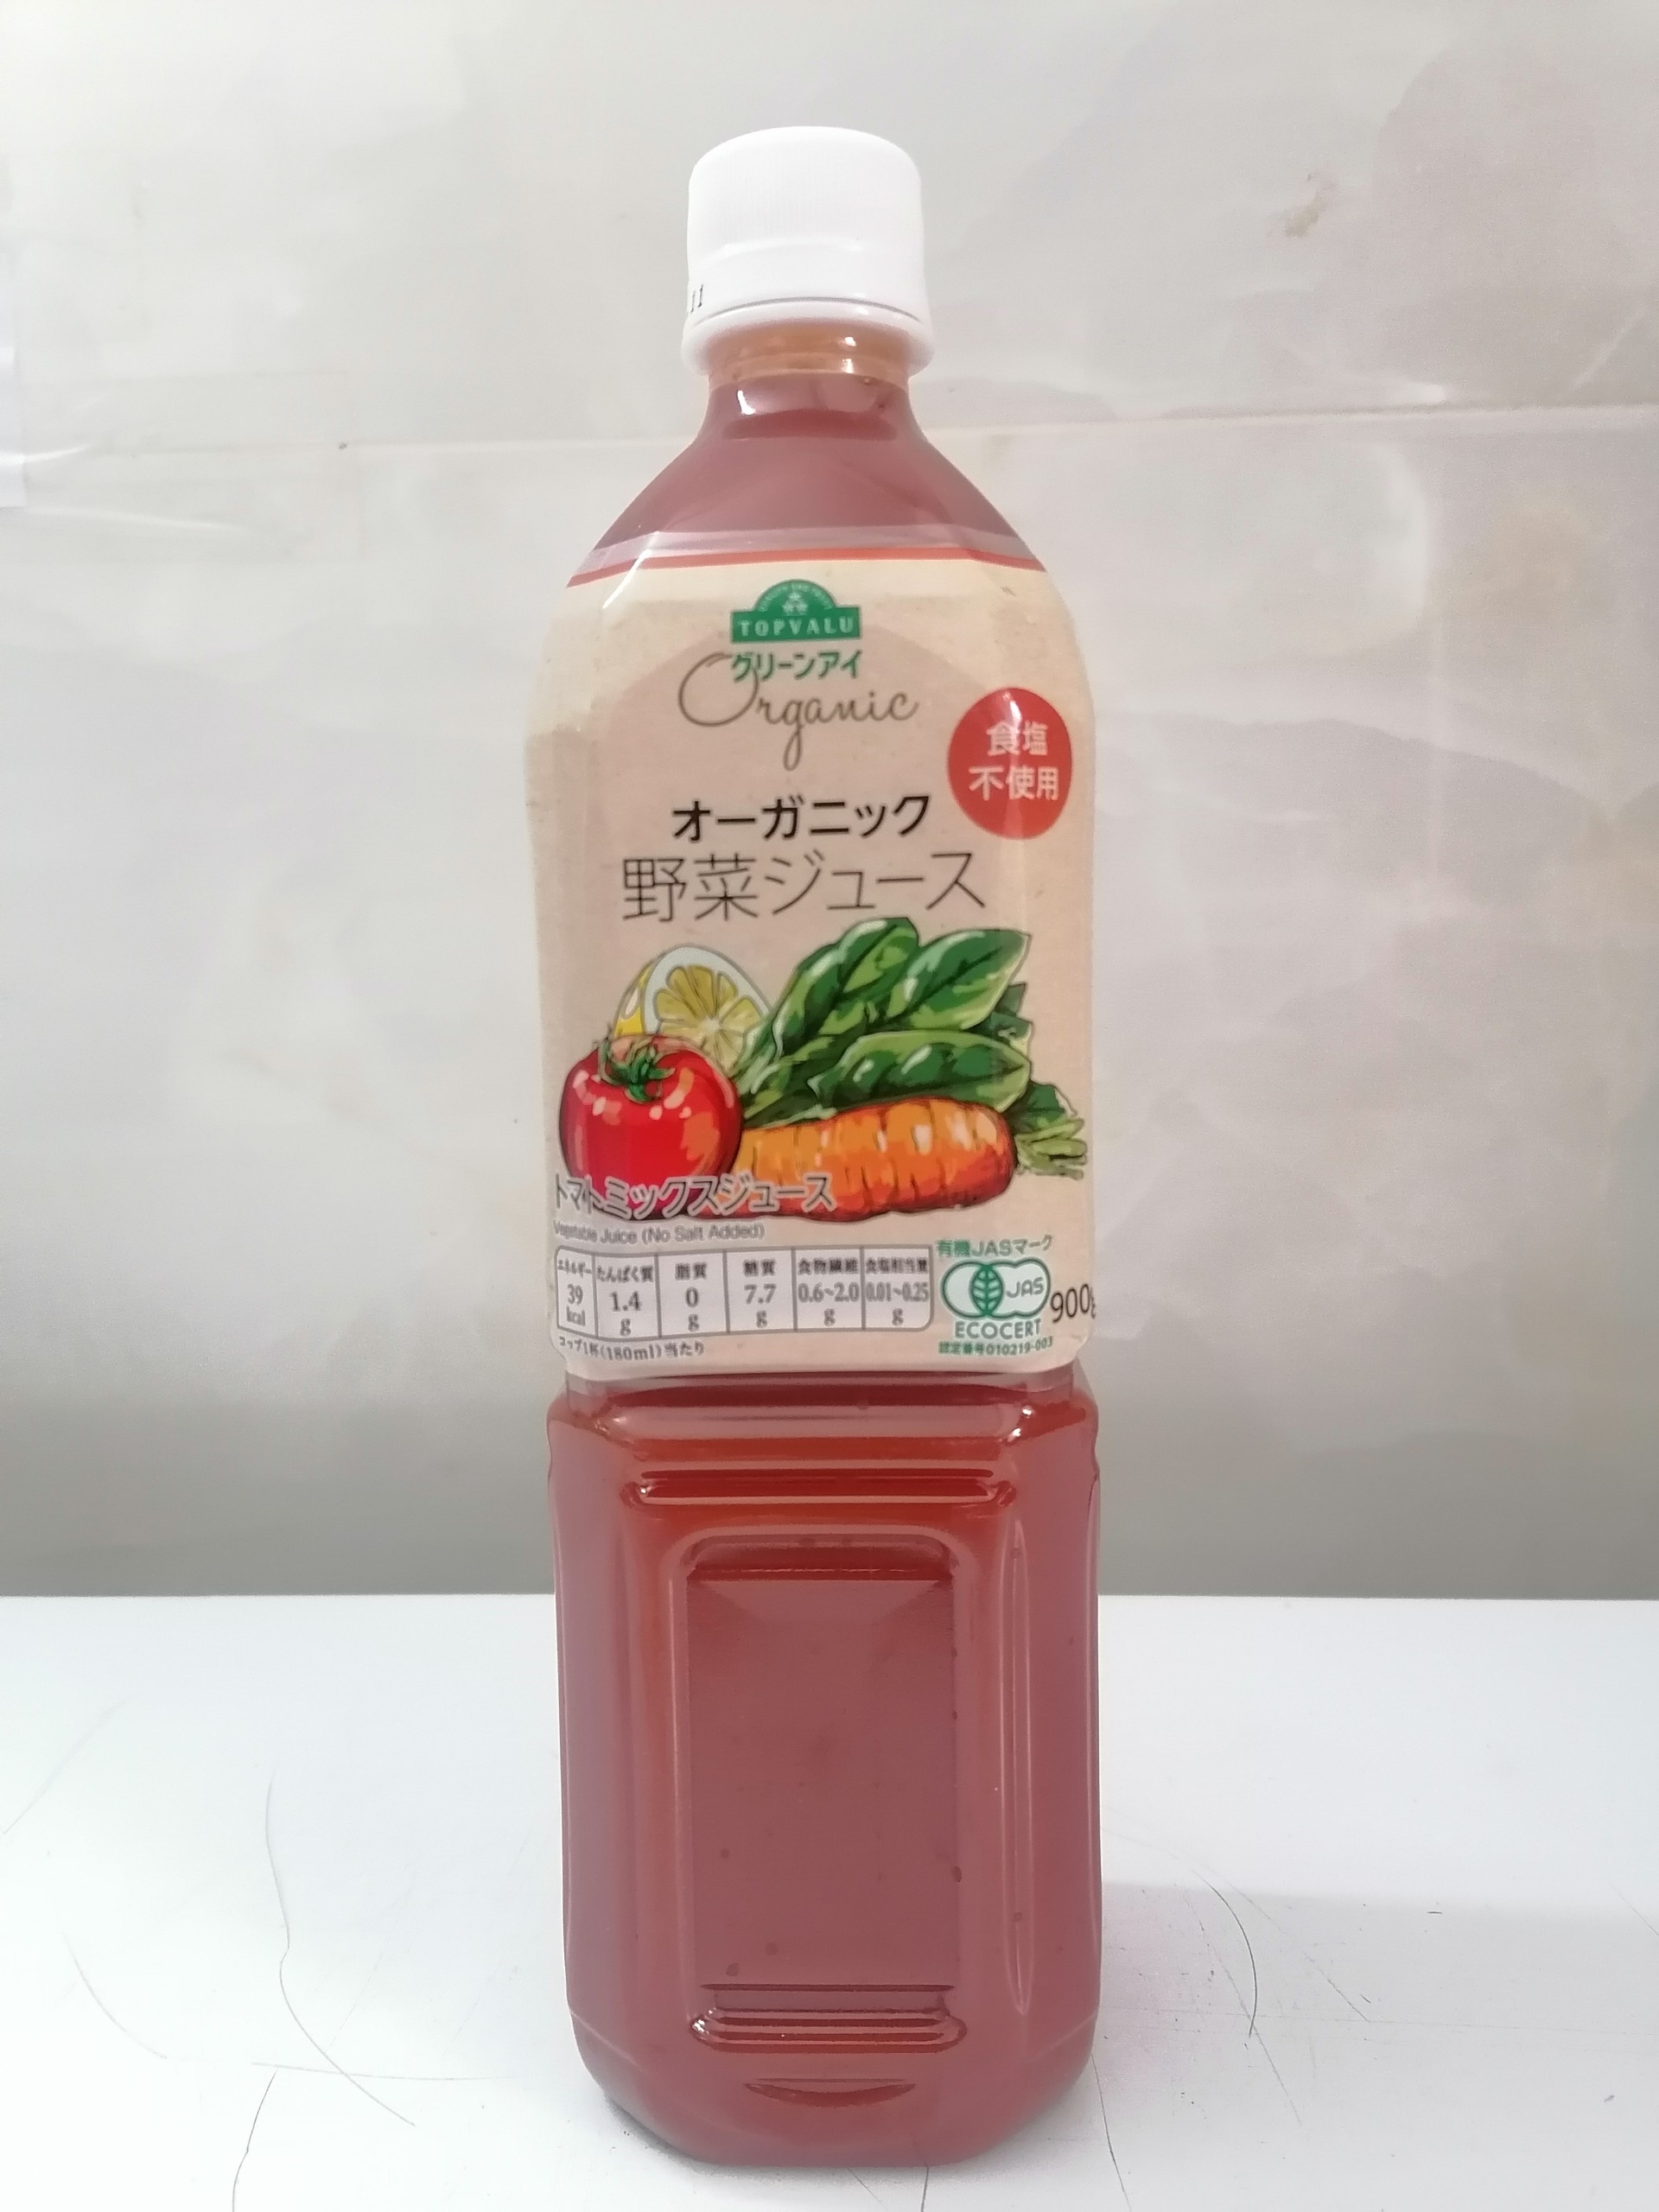 [900g] Nước ép RAU CỦ hữu cơ không muối [Japan] TOPVALU (no salt) Organic Vegetables Juice (btn-hk)